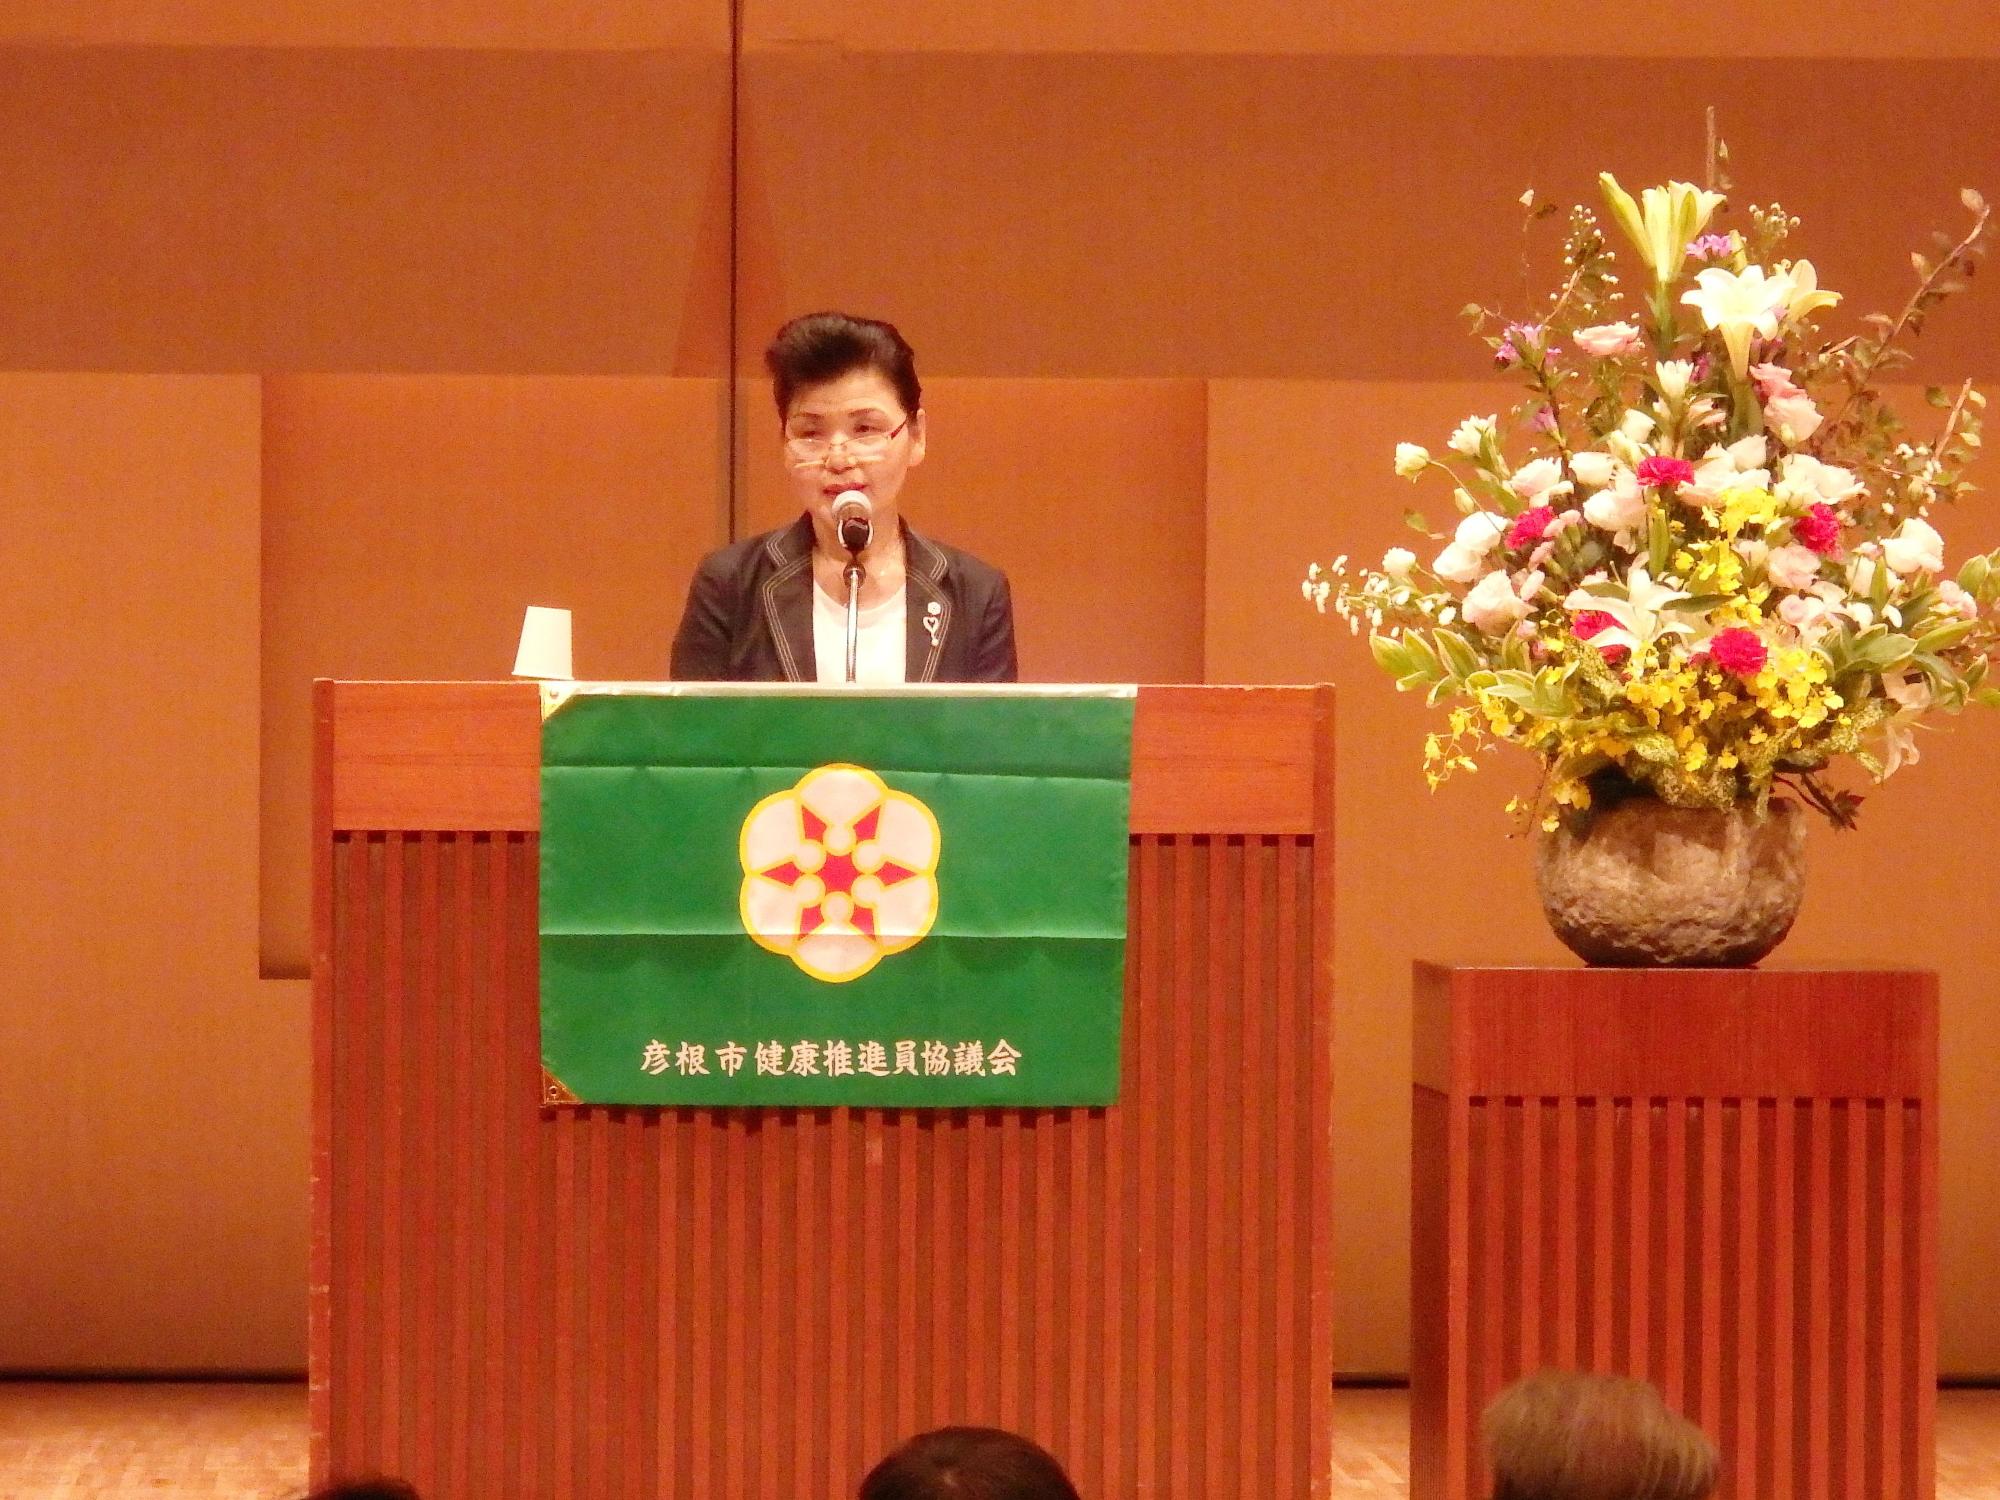 壇上にて、滋賀県健康推進員団体連絡協議会の顧問である井上喜代子様が「健康推進員と私」と題した講演を行っている写真